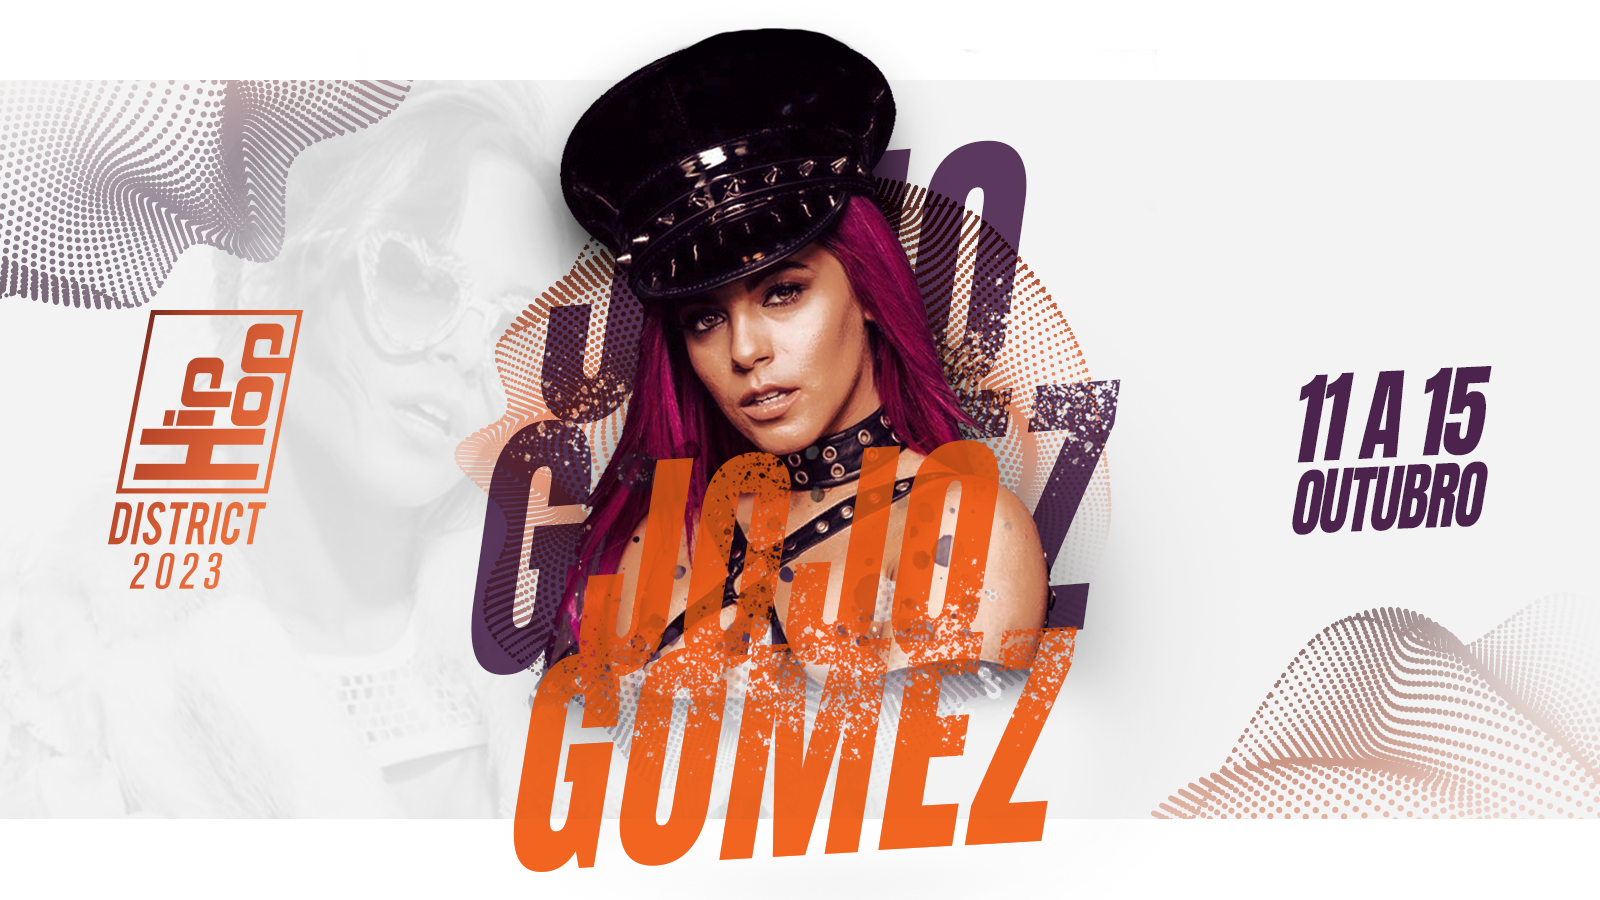 Esta imagen presenta a la artista Jojo Gomez, junto con el logo de Hip Hop District y la fecha del evento.